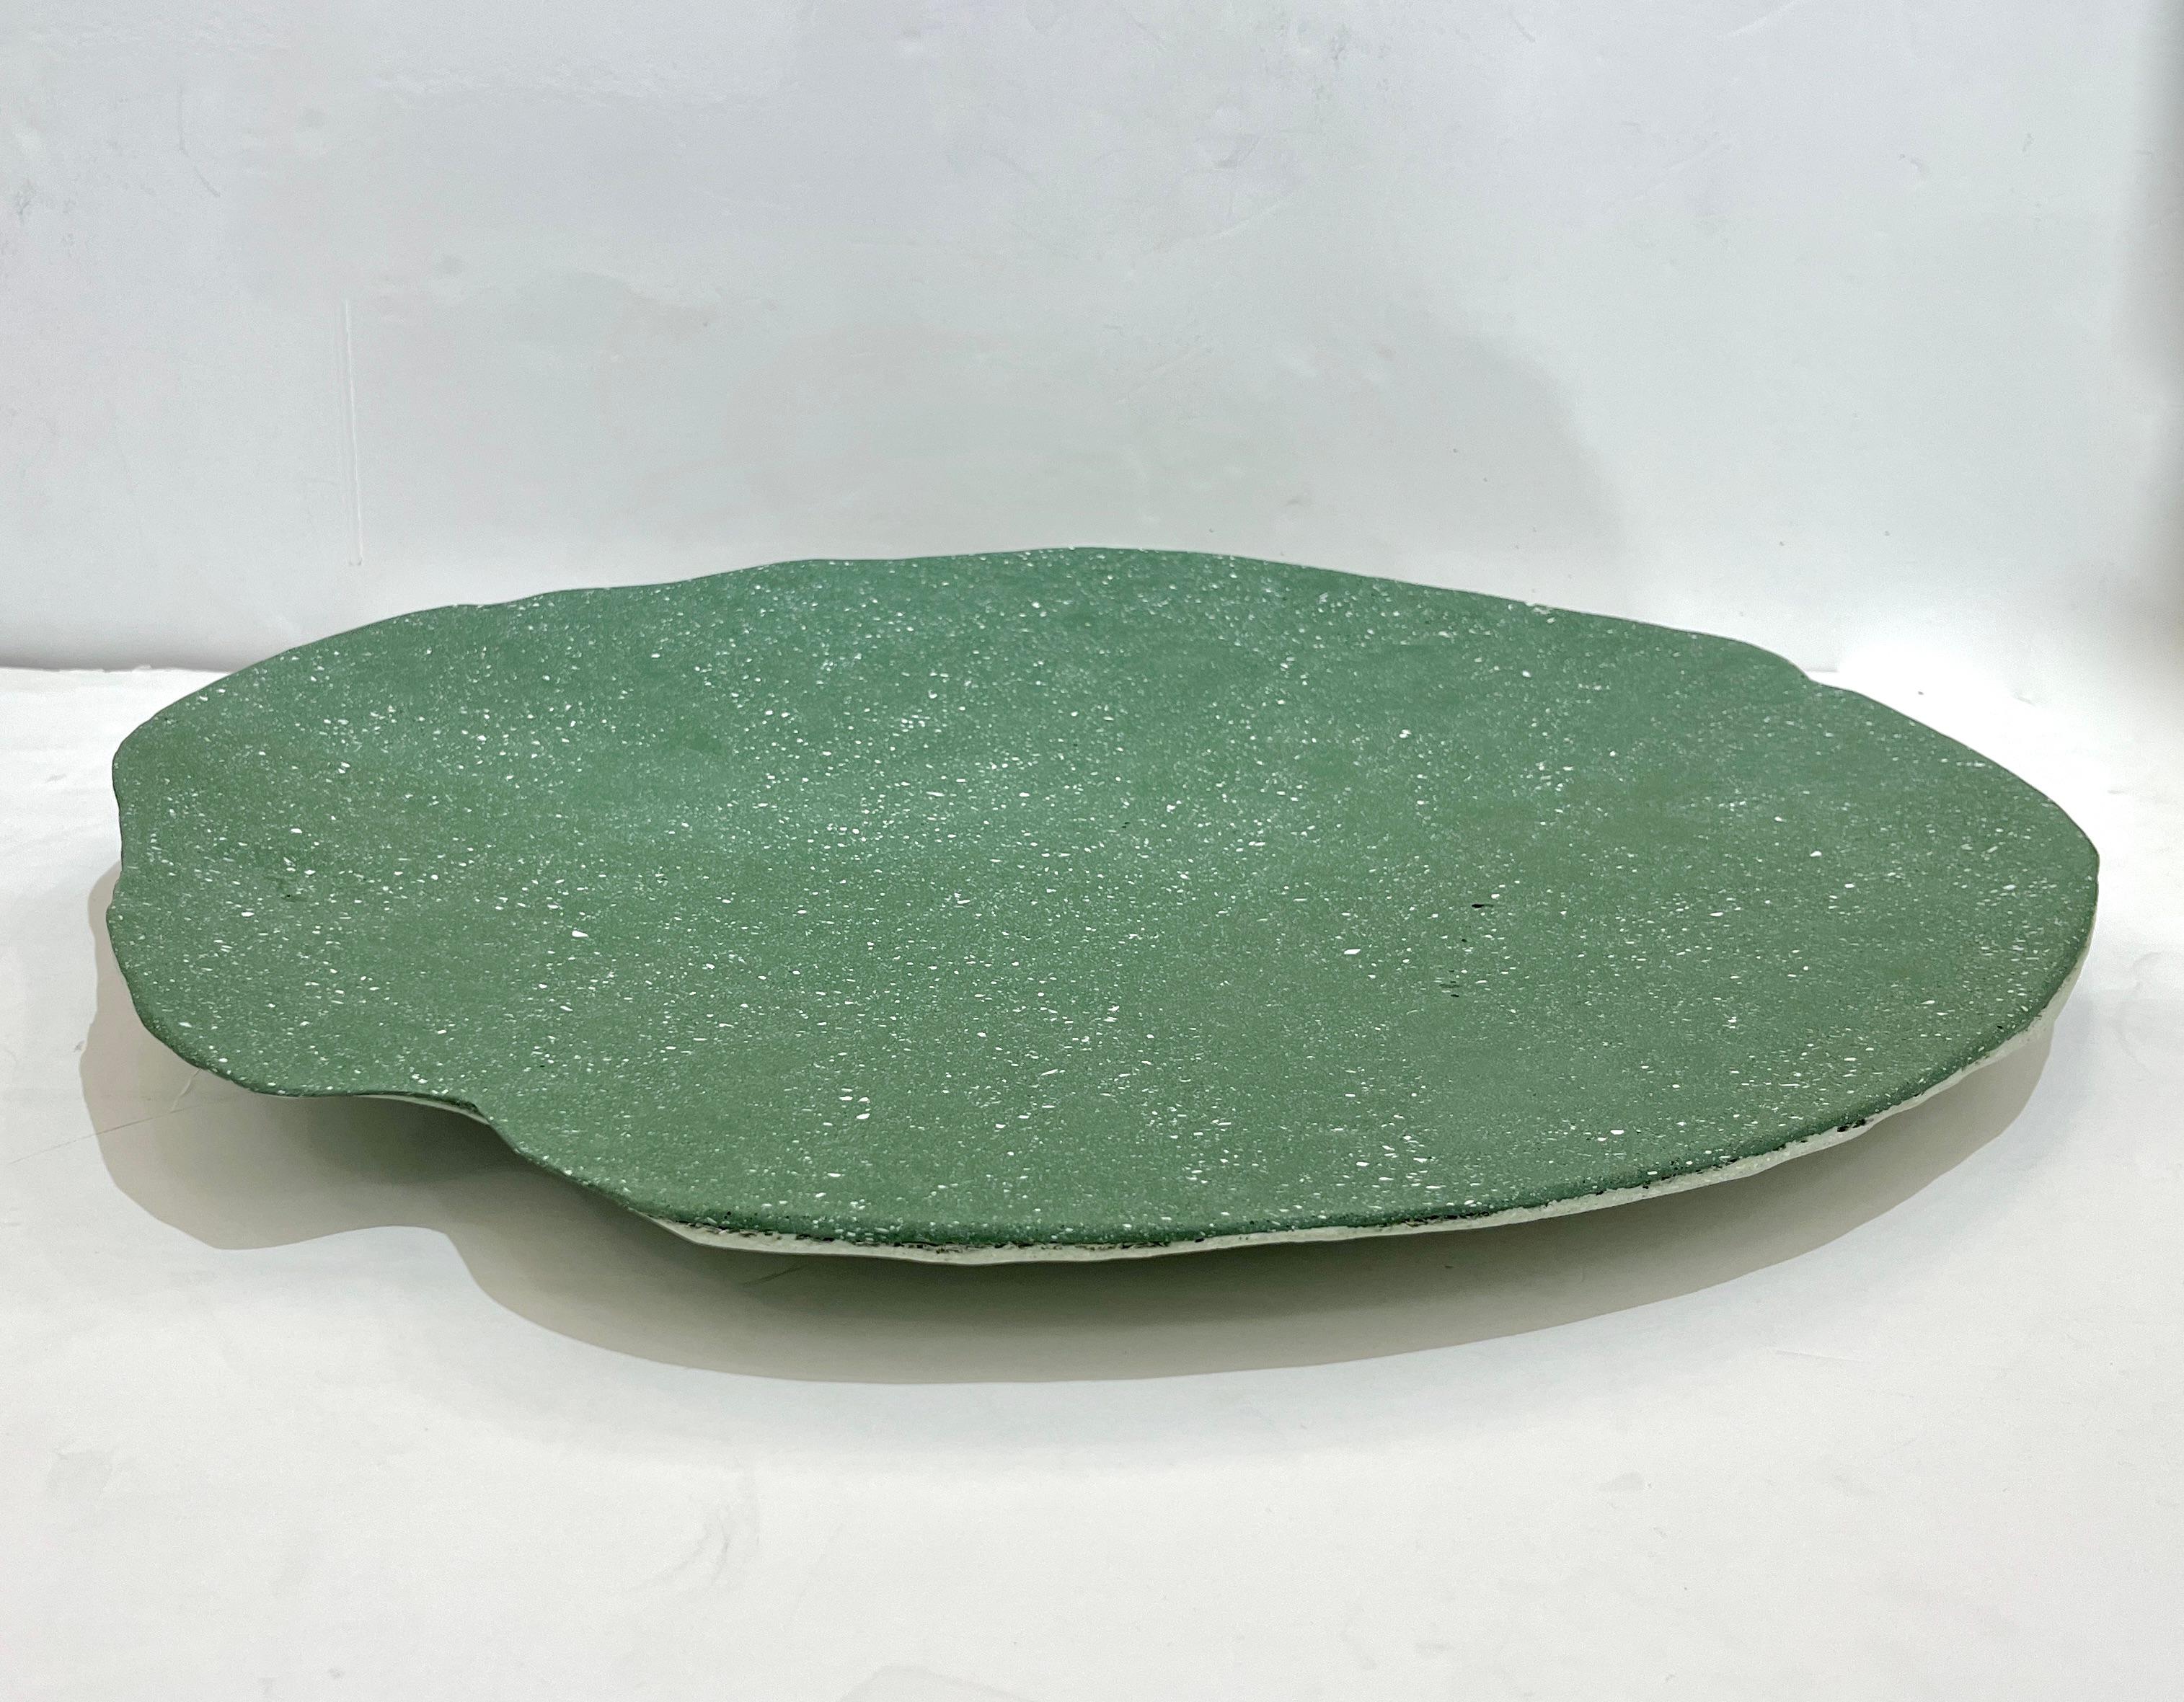 Ce centre de table organique et amorphe, d'un vert luxuriant rehaussé de blanc, est une œuvre d'art créée par l'artiste et designer italien GioMinelli. Réalisé en utilisant et en mélangeant de la fibre de verre et de la résine recyclées dans un